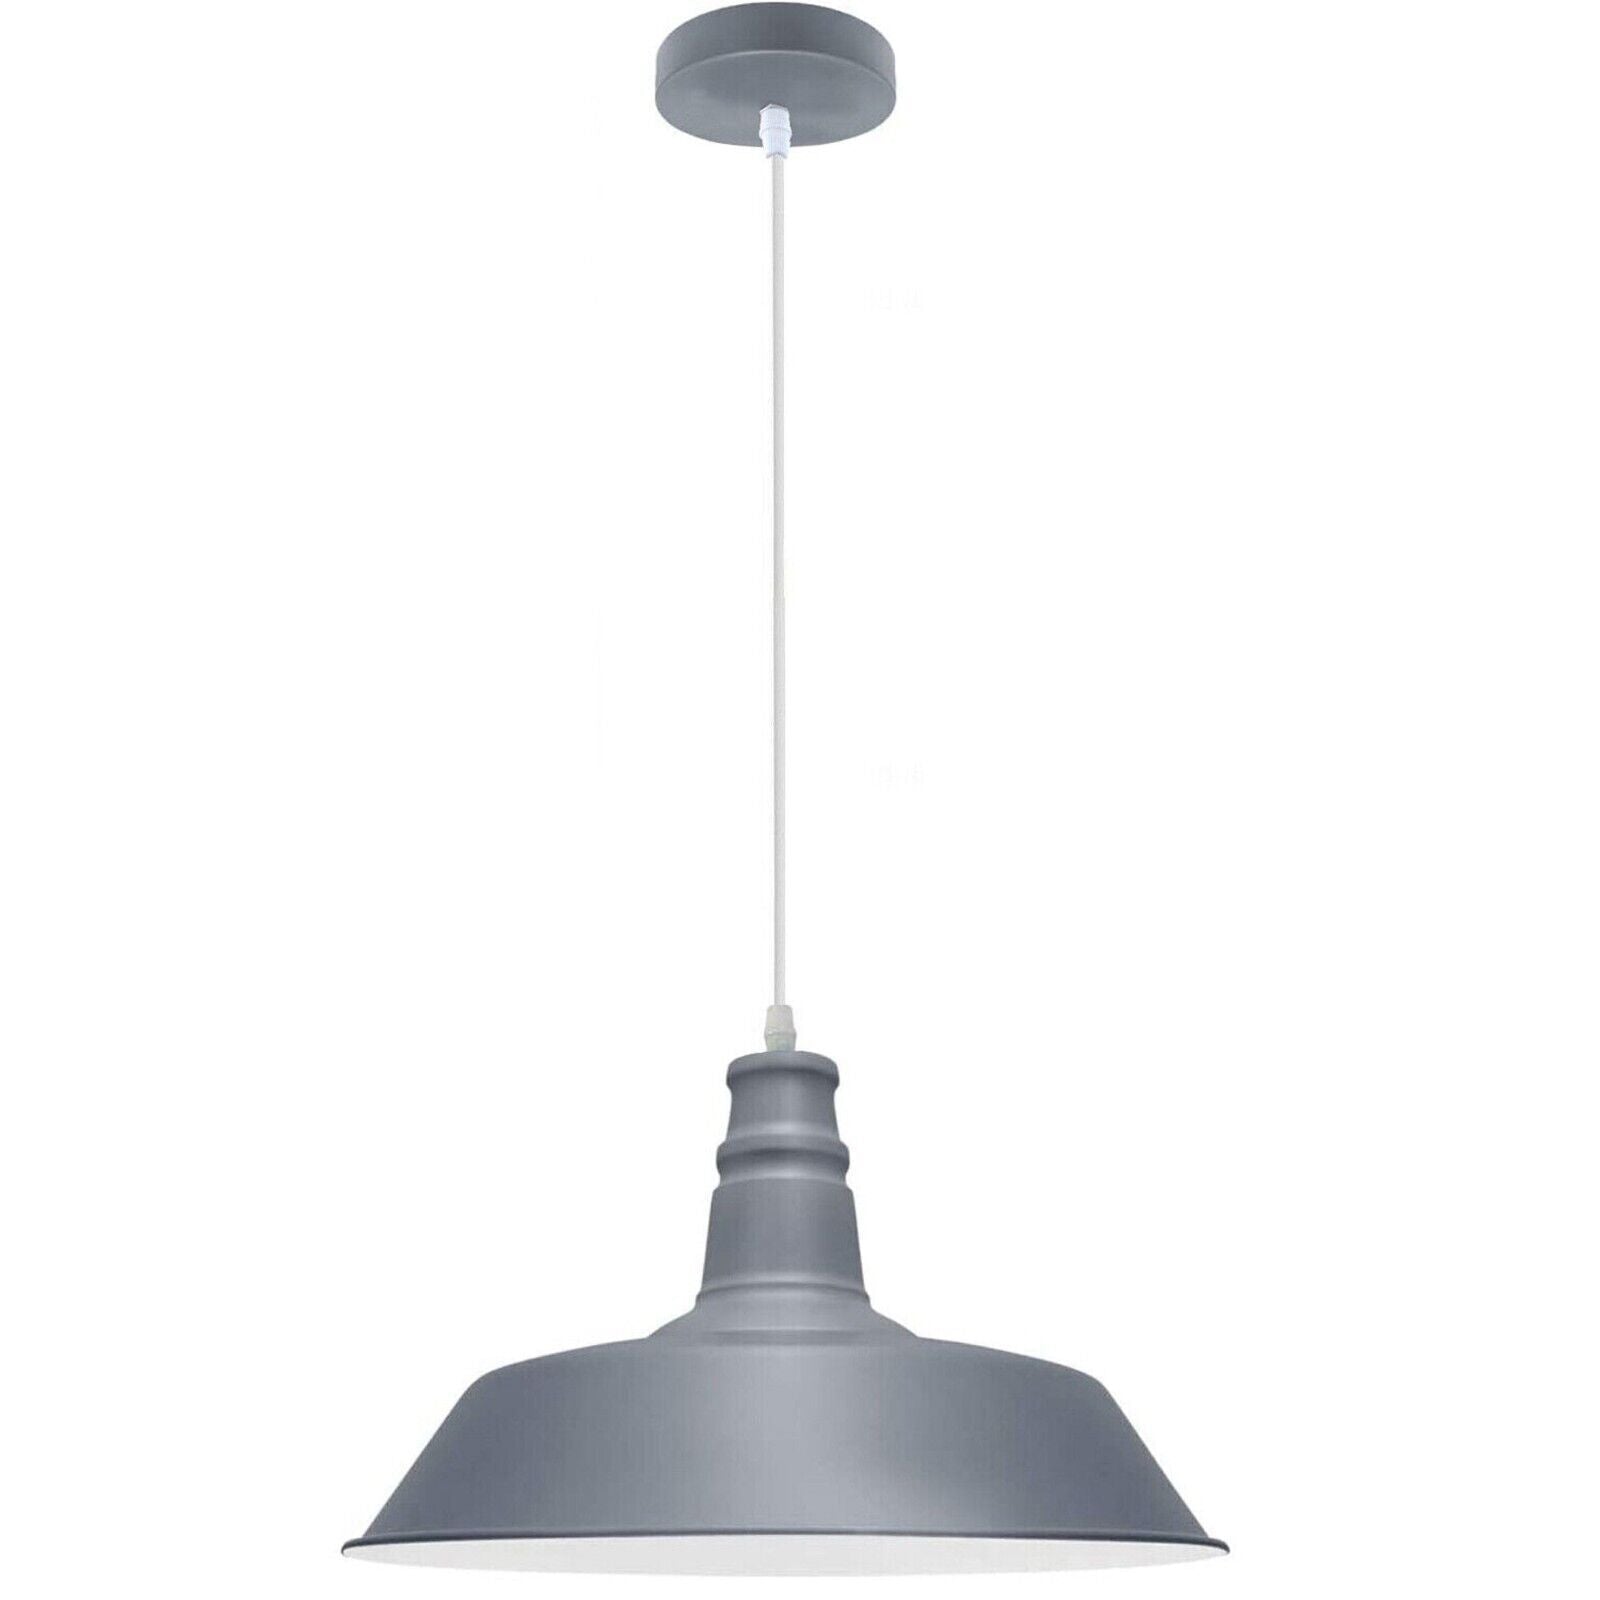 Hanging pendant Ceiling Lamp, Metal Light Shade Lighting UK E27 Edison base Decorate Height Adjustable Pendant Light for Bar, Restaurant 